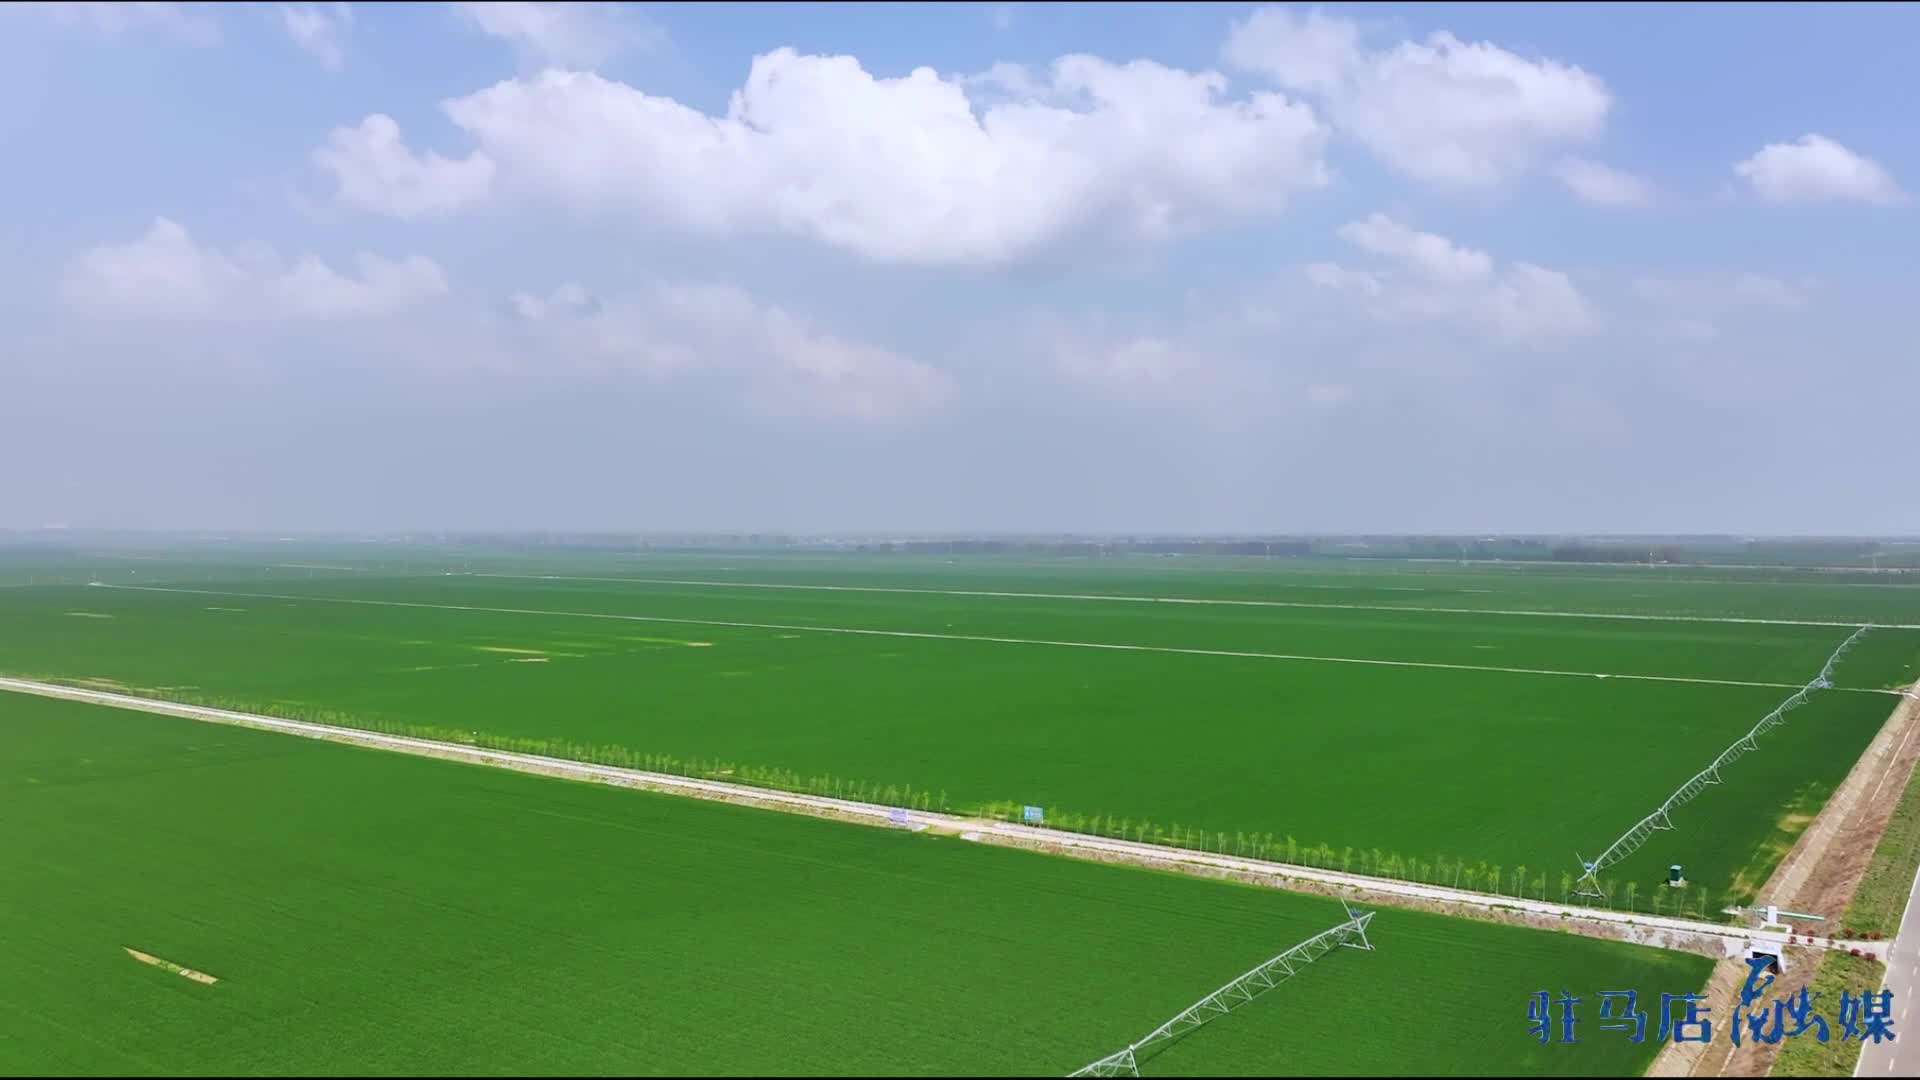 大美天中·春色||西平县高标准农田:风吹麦浪万亩碧 绘就丰收新图景